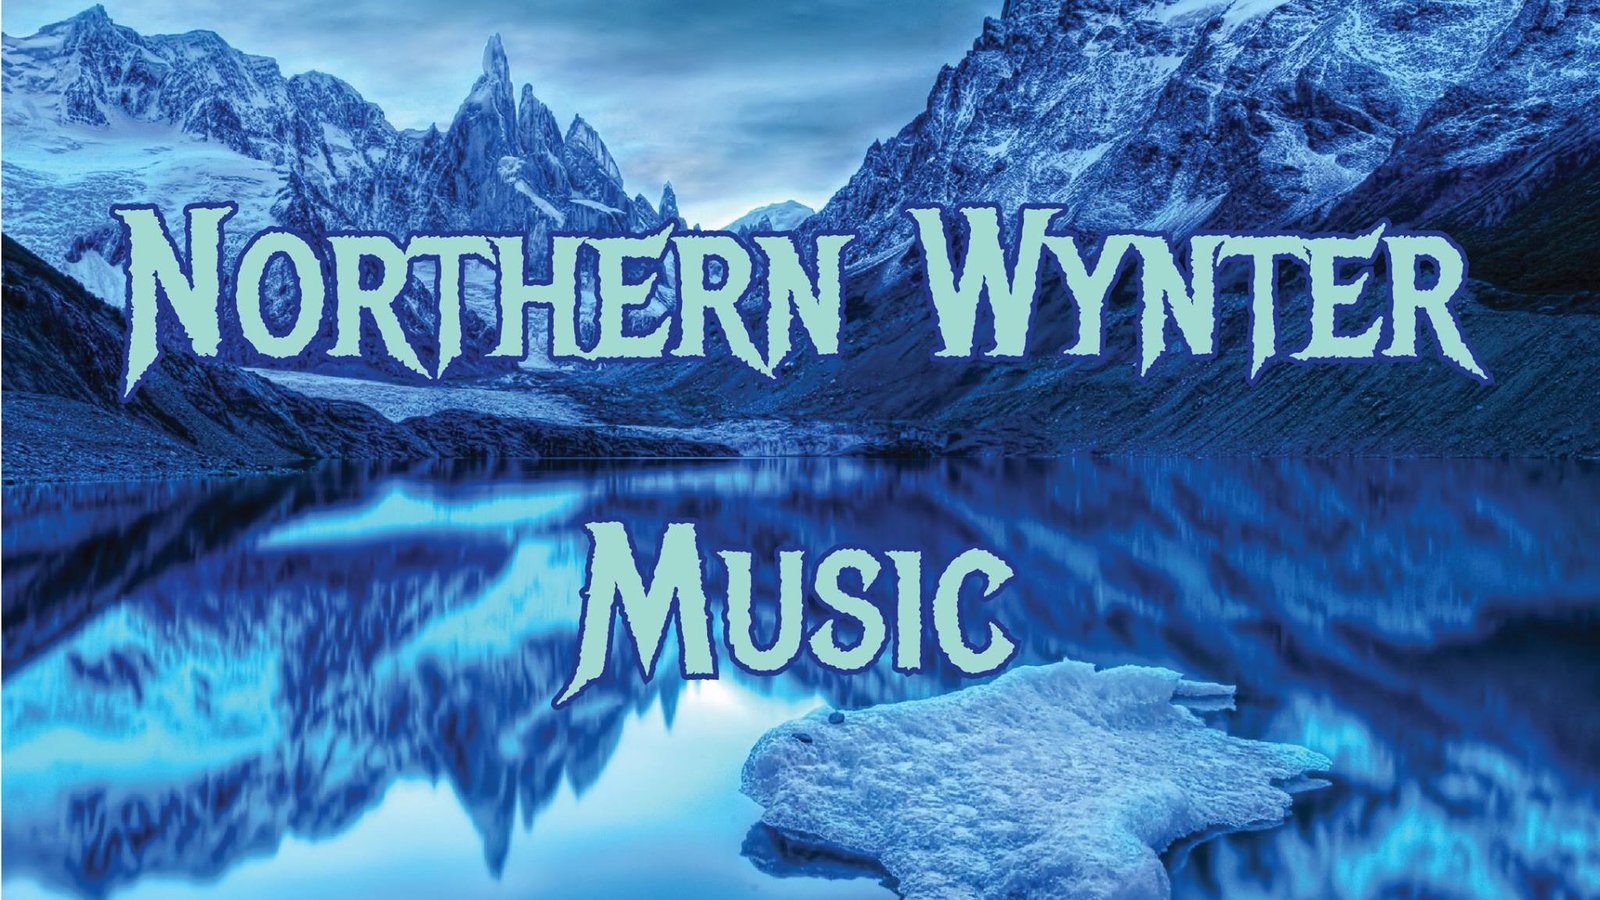 Northern Wynter Music